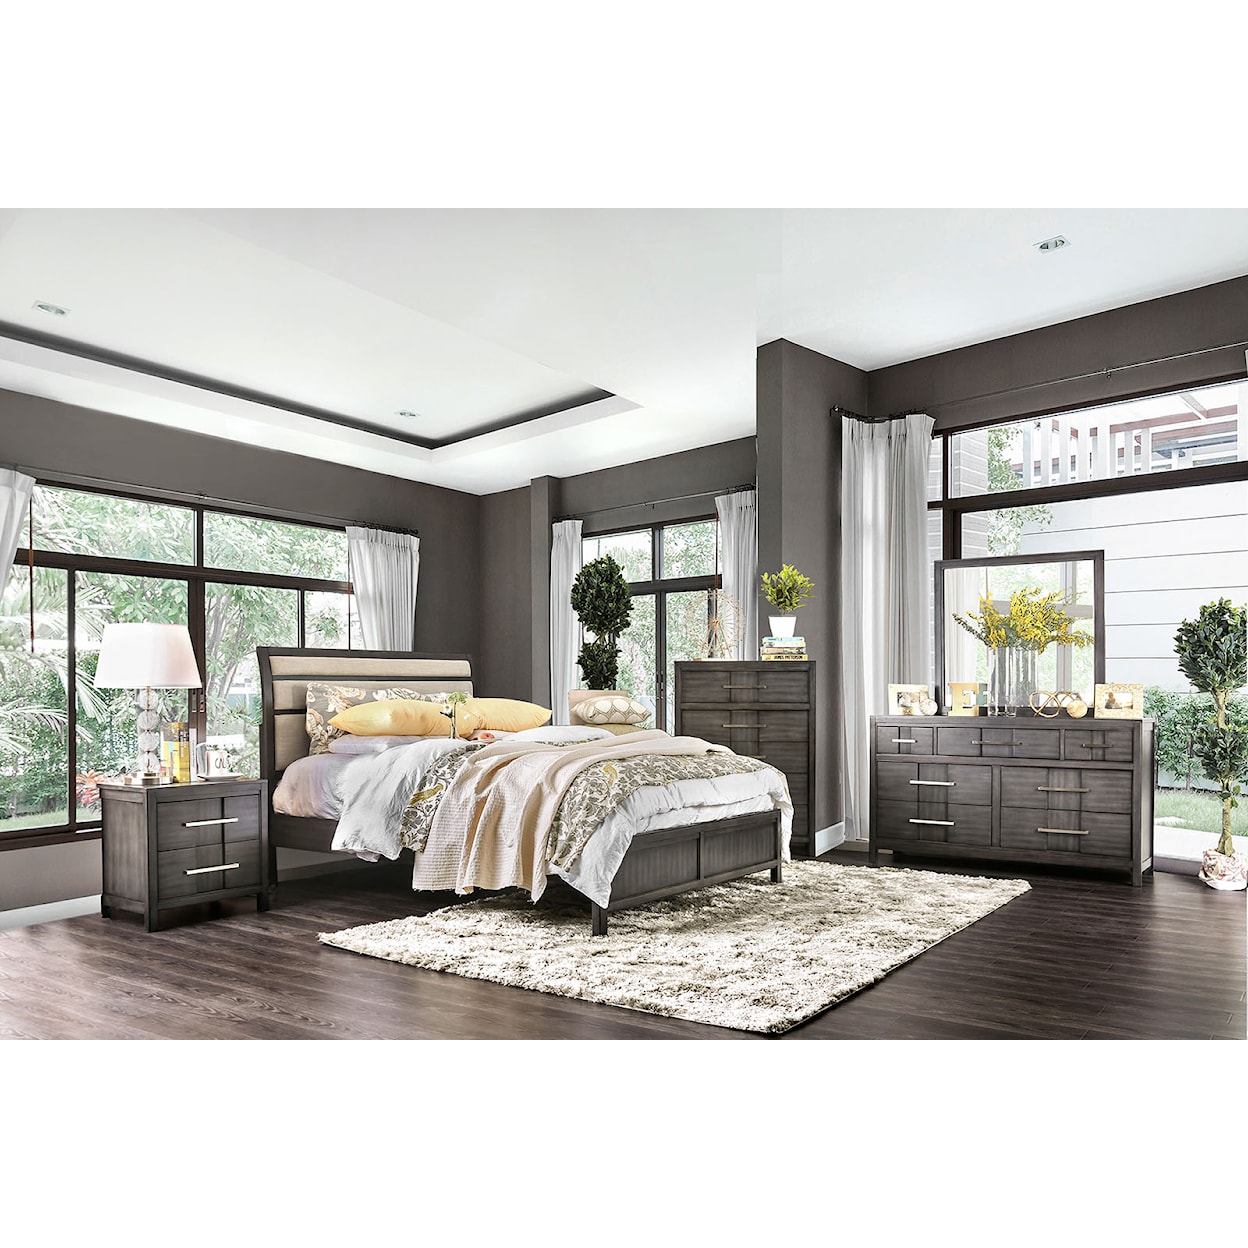 Furniture of America Berenice 4-Piece Queen Bedroom Set